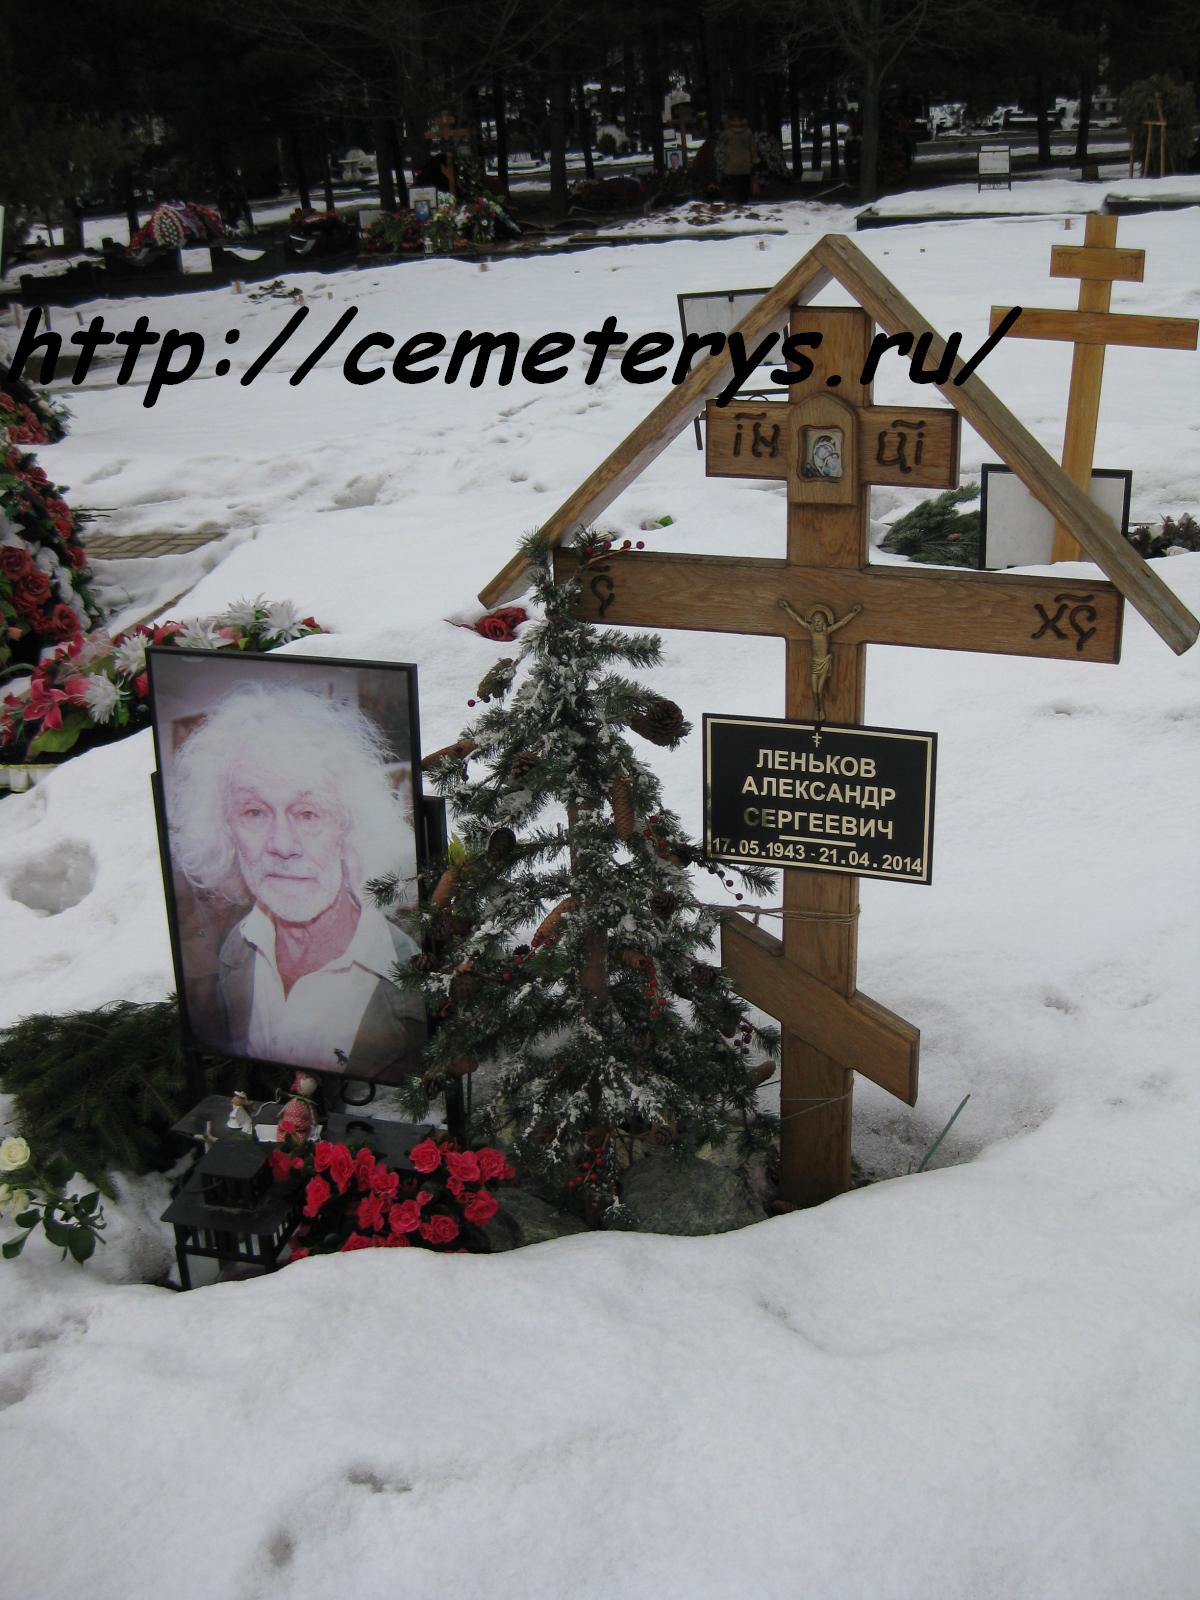 могила Александра Ленькова на Троекуровском кладбище в Москве  (фото Дмитрия Кондратьева)